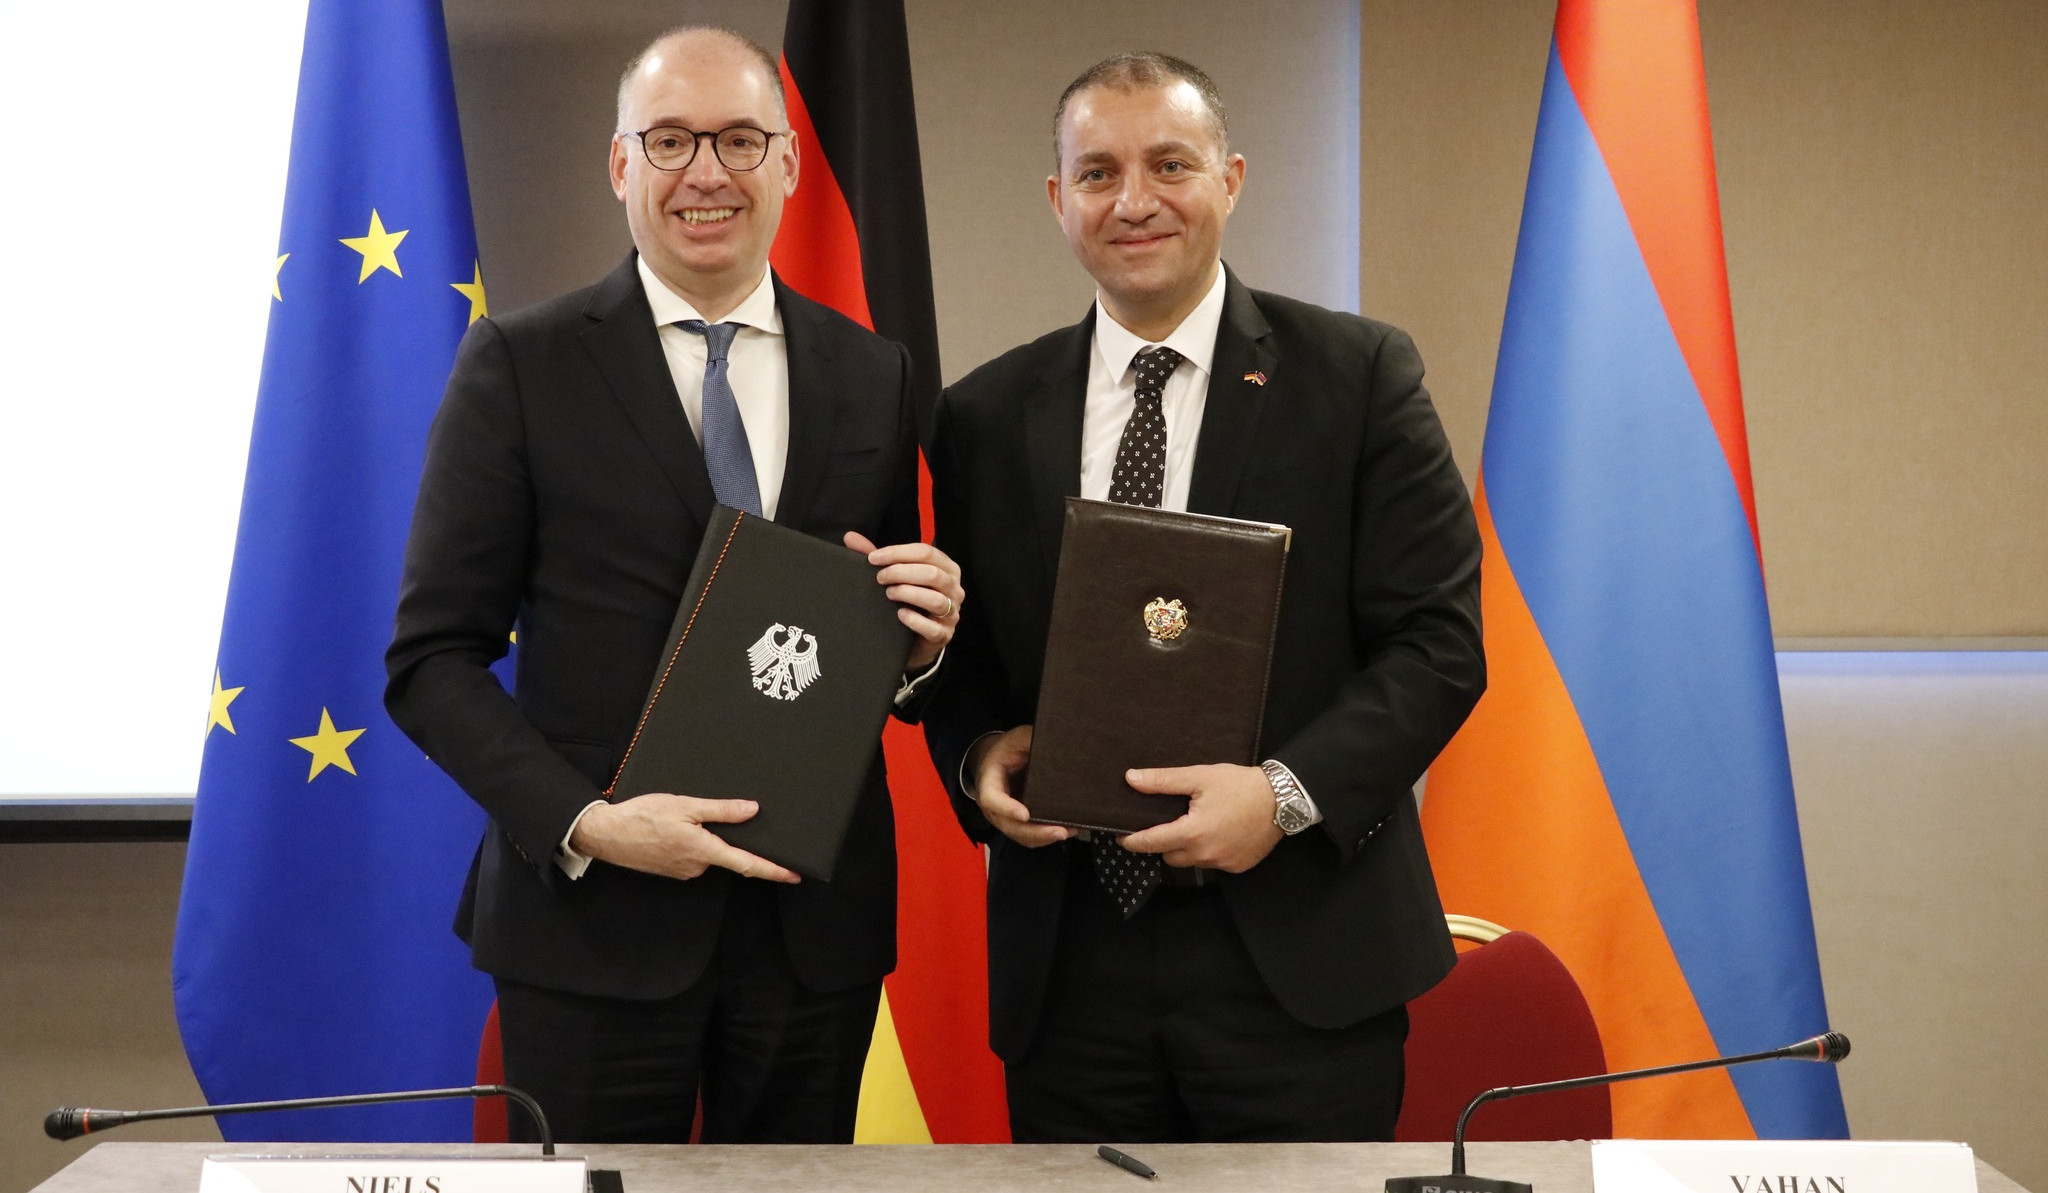 Ermənistan-Almaniya əməkdaşlığının inkişafına dair hökumətlərarası danışıqların nəticəsi olaraq protokol imzalanıb